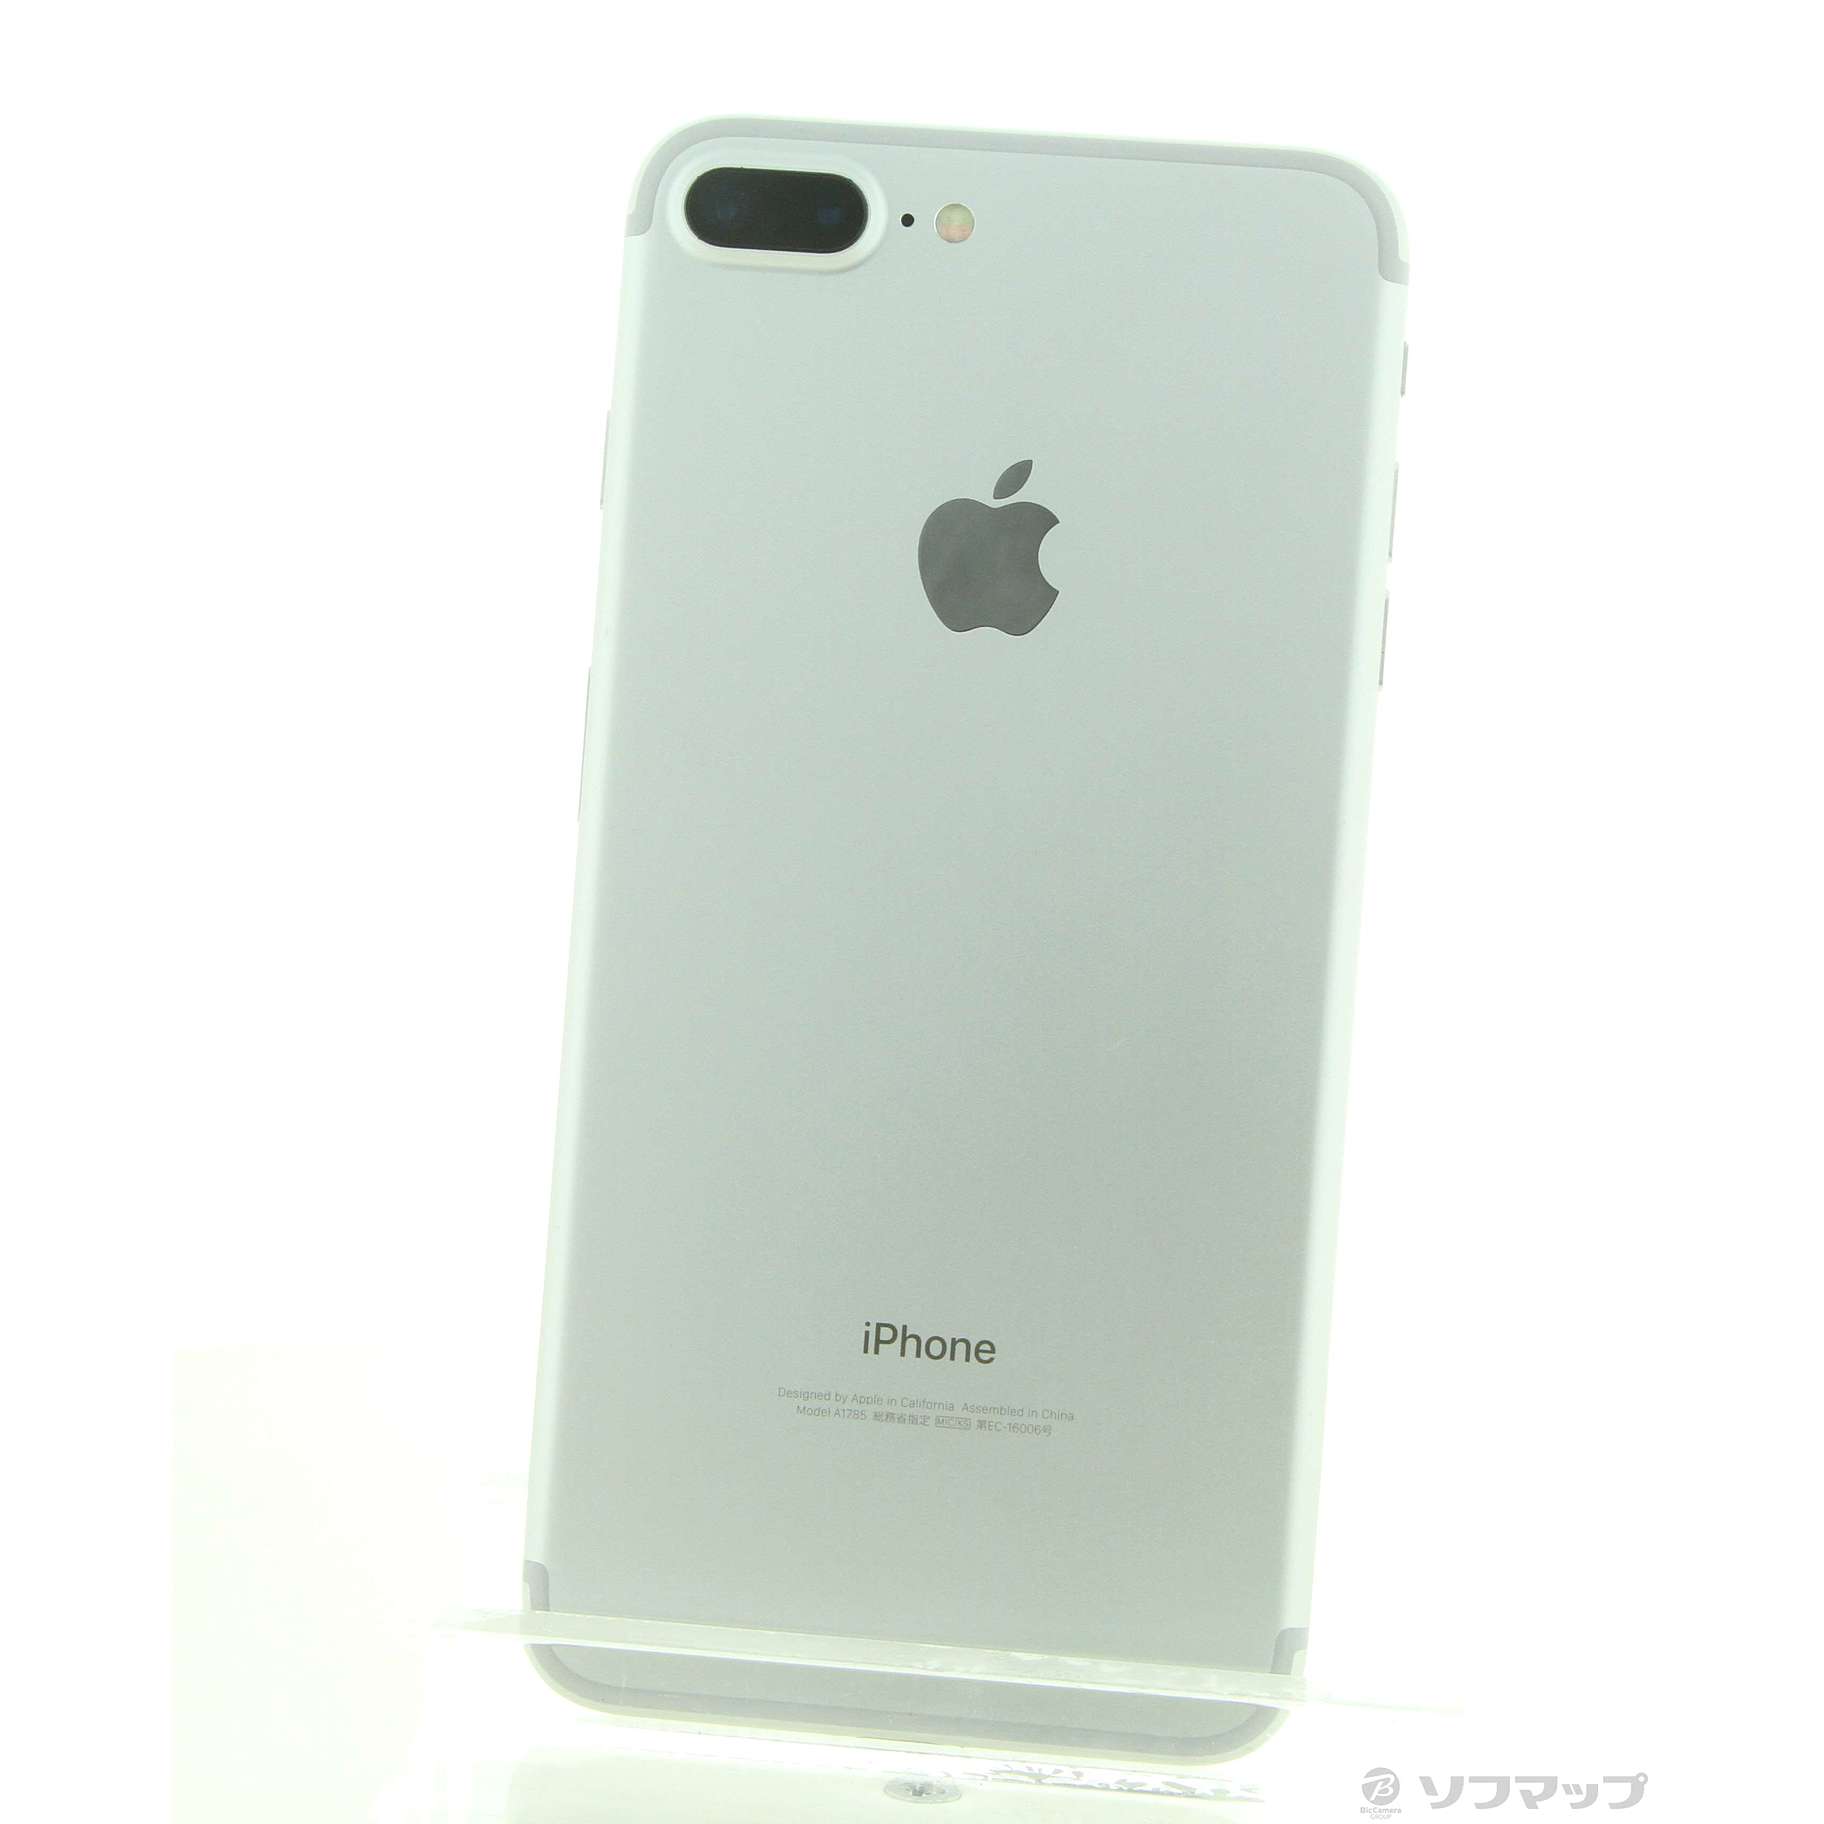 iPhone 7 plus 128GB Silver 新品未開封